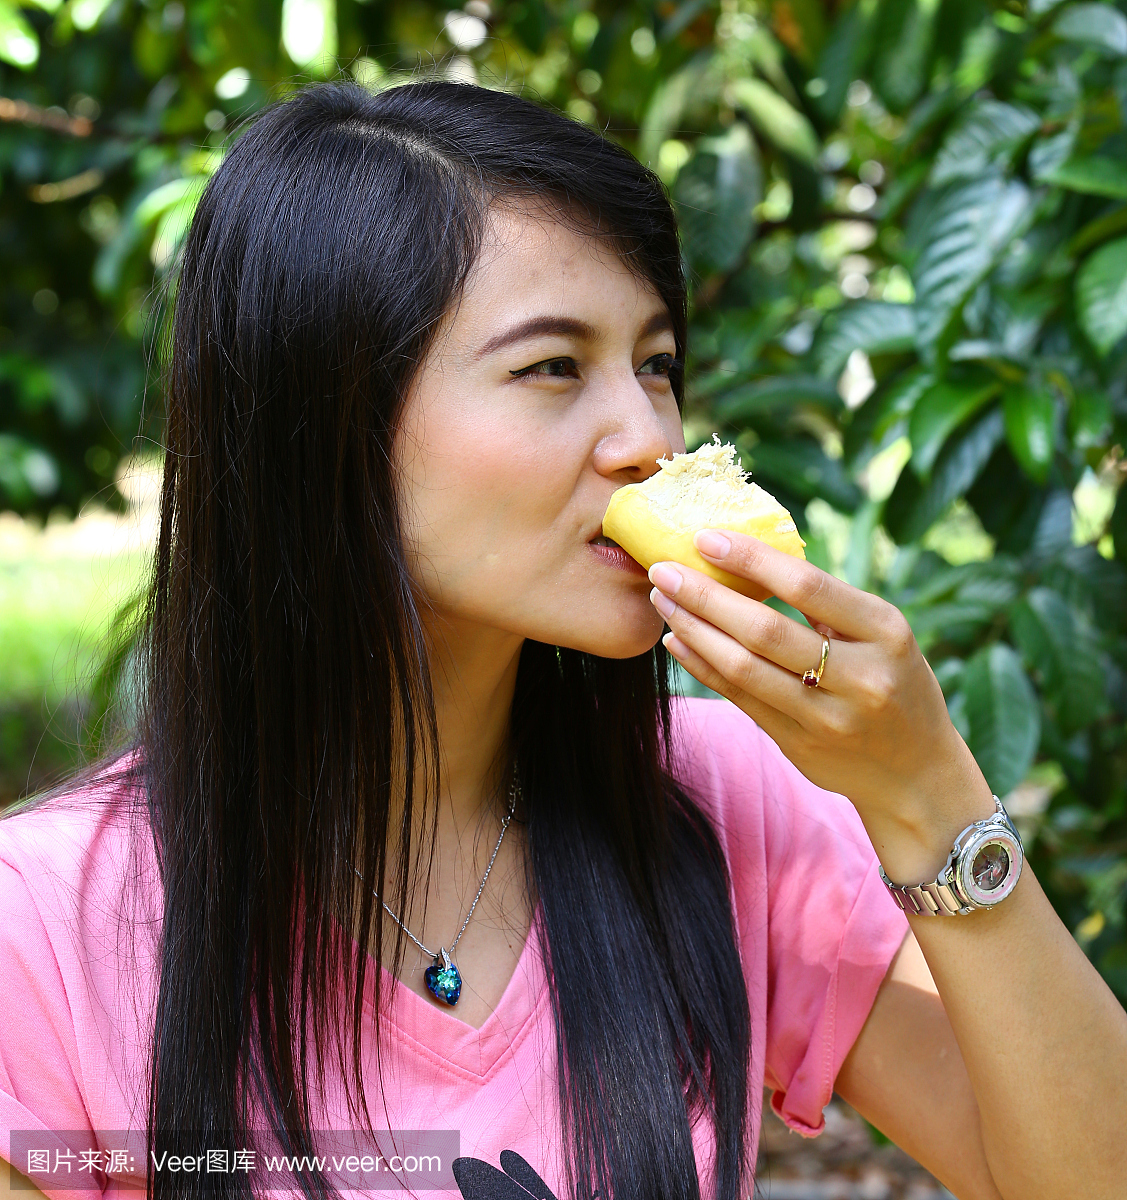 微笑的亚裔女孩在她手中吃榴莲水果